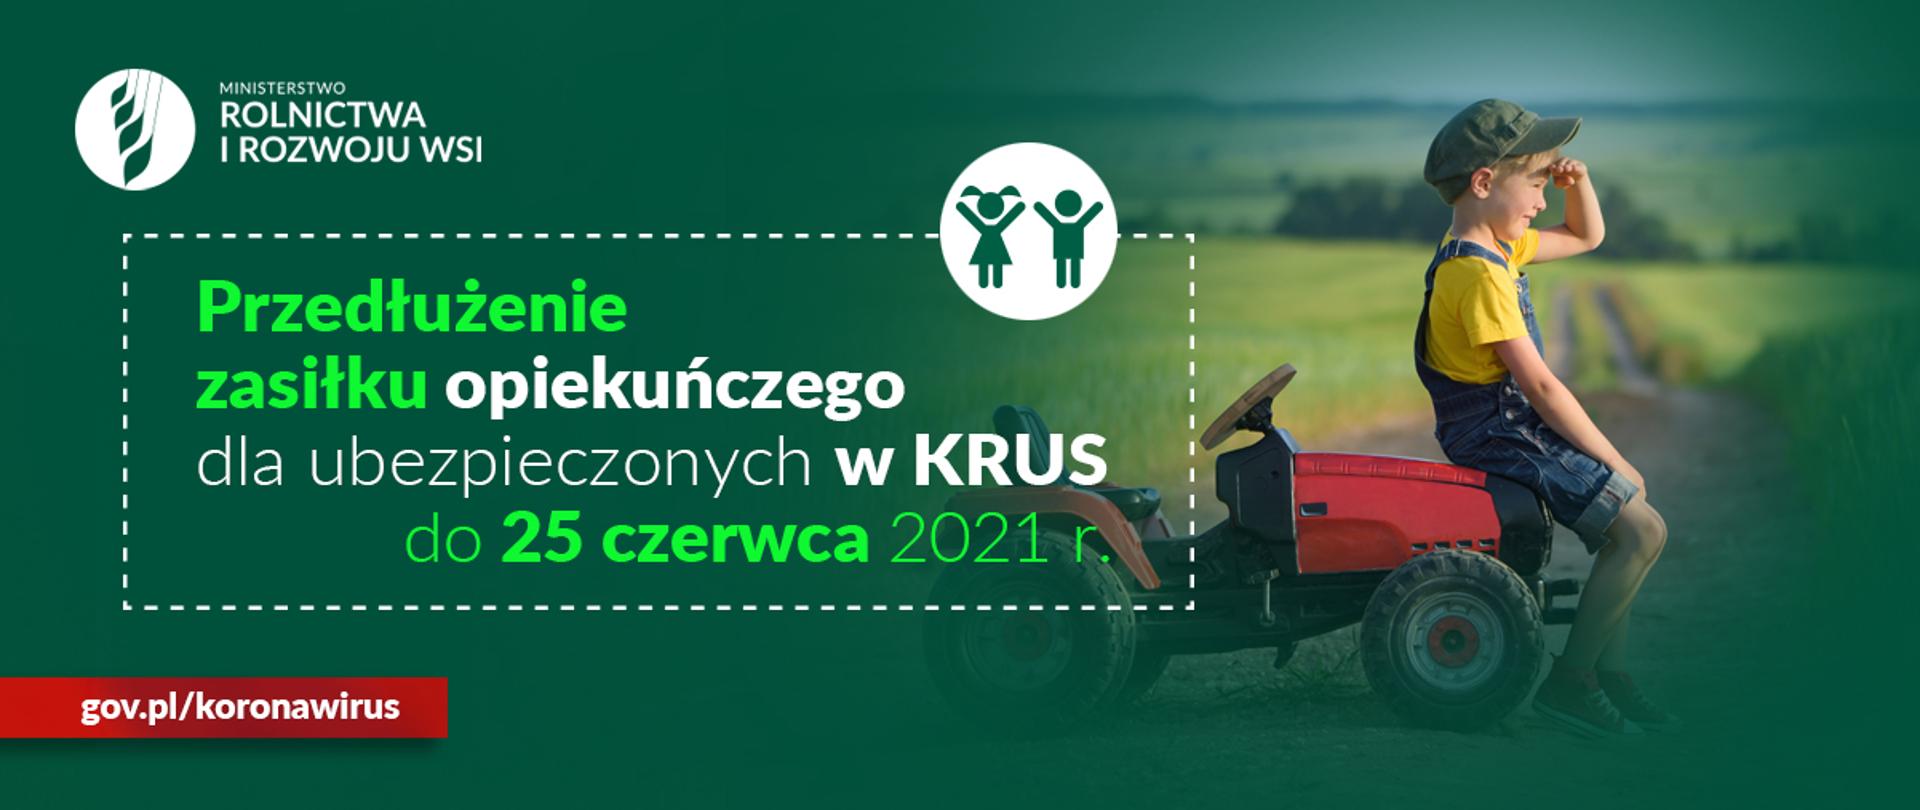 Infografika do komunikatu "Zasiłek opiekuńczy dla ubezpieczonego w KRUS do 25 czerwca 2021 r."
Chłopiec w czapce z daszkiem siedzący na małym traktorku.